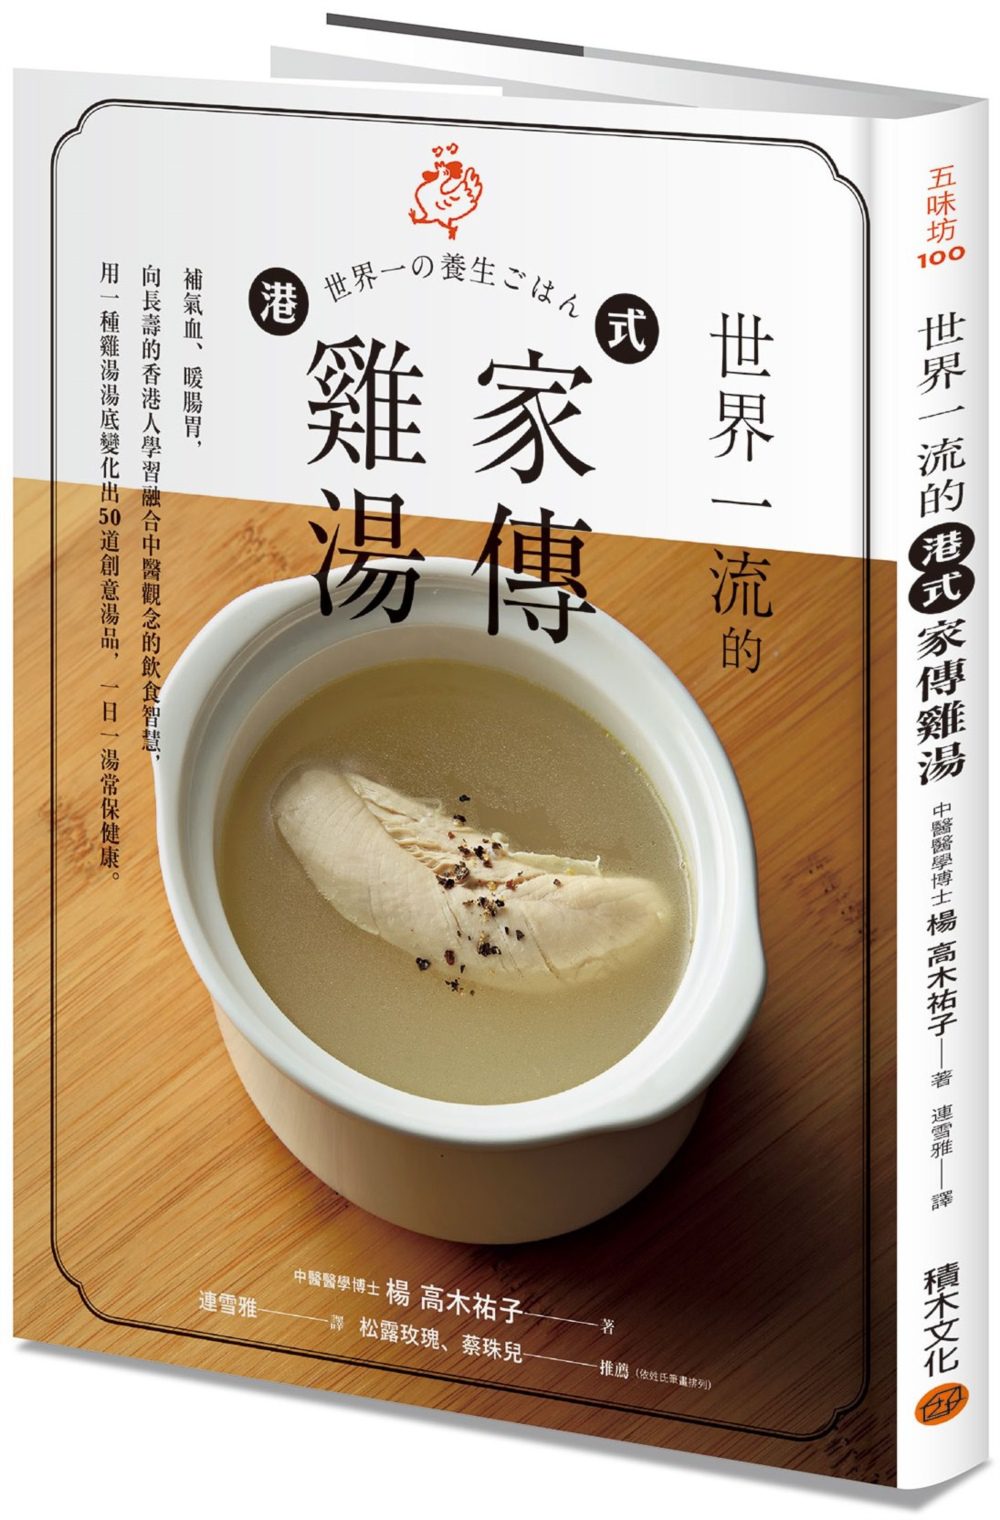 世界一流的港式家傳雞湯：補氣血、暖腸胃，向長壽的香港人學習融合中醫觀念的飲食智慧，用一種雞湯湯底變化出50